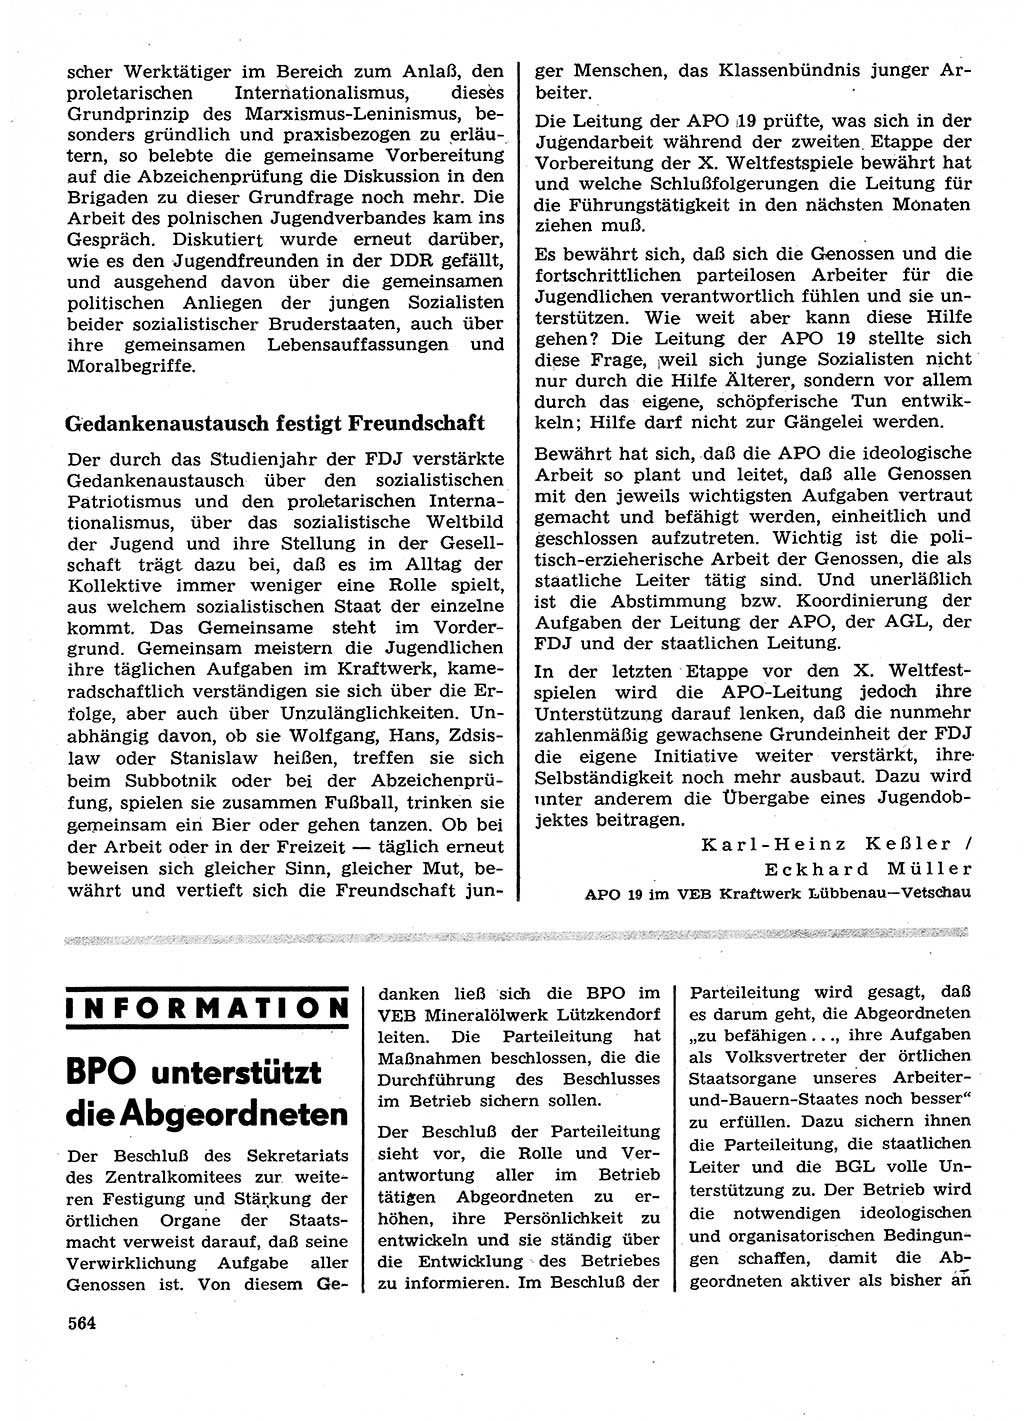 Neuer Weg (NW), Organ des Zentralkomitees (ZK) der SED (Sozialistische Einheitspartei Deutschlands) für Fragen des Parteilebens, 28. Jahrgang [Deutsche Demokratische Republik (DDR)] 1973, Seite 564 (NW ZK SED DDR 1973, S. 564)